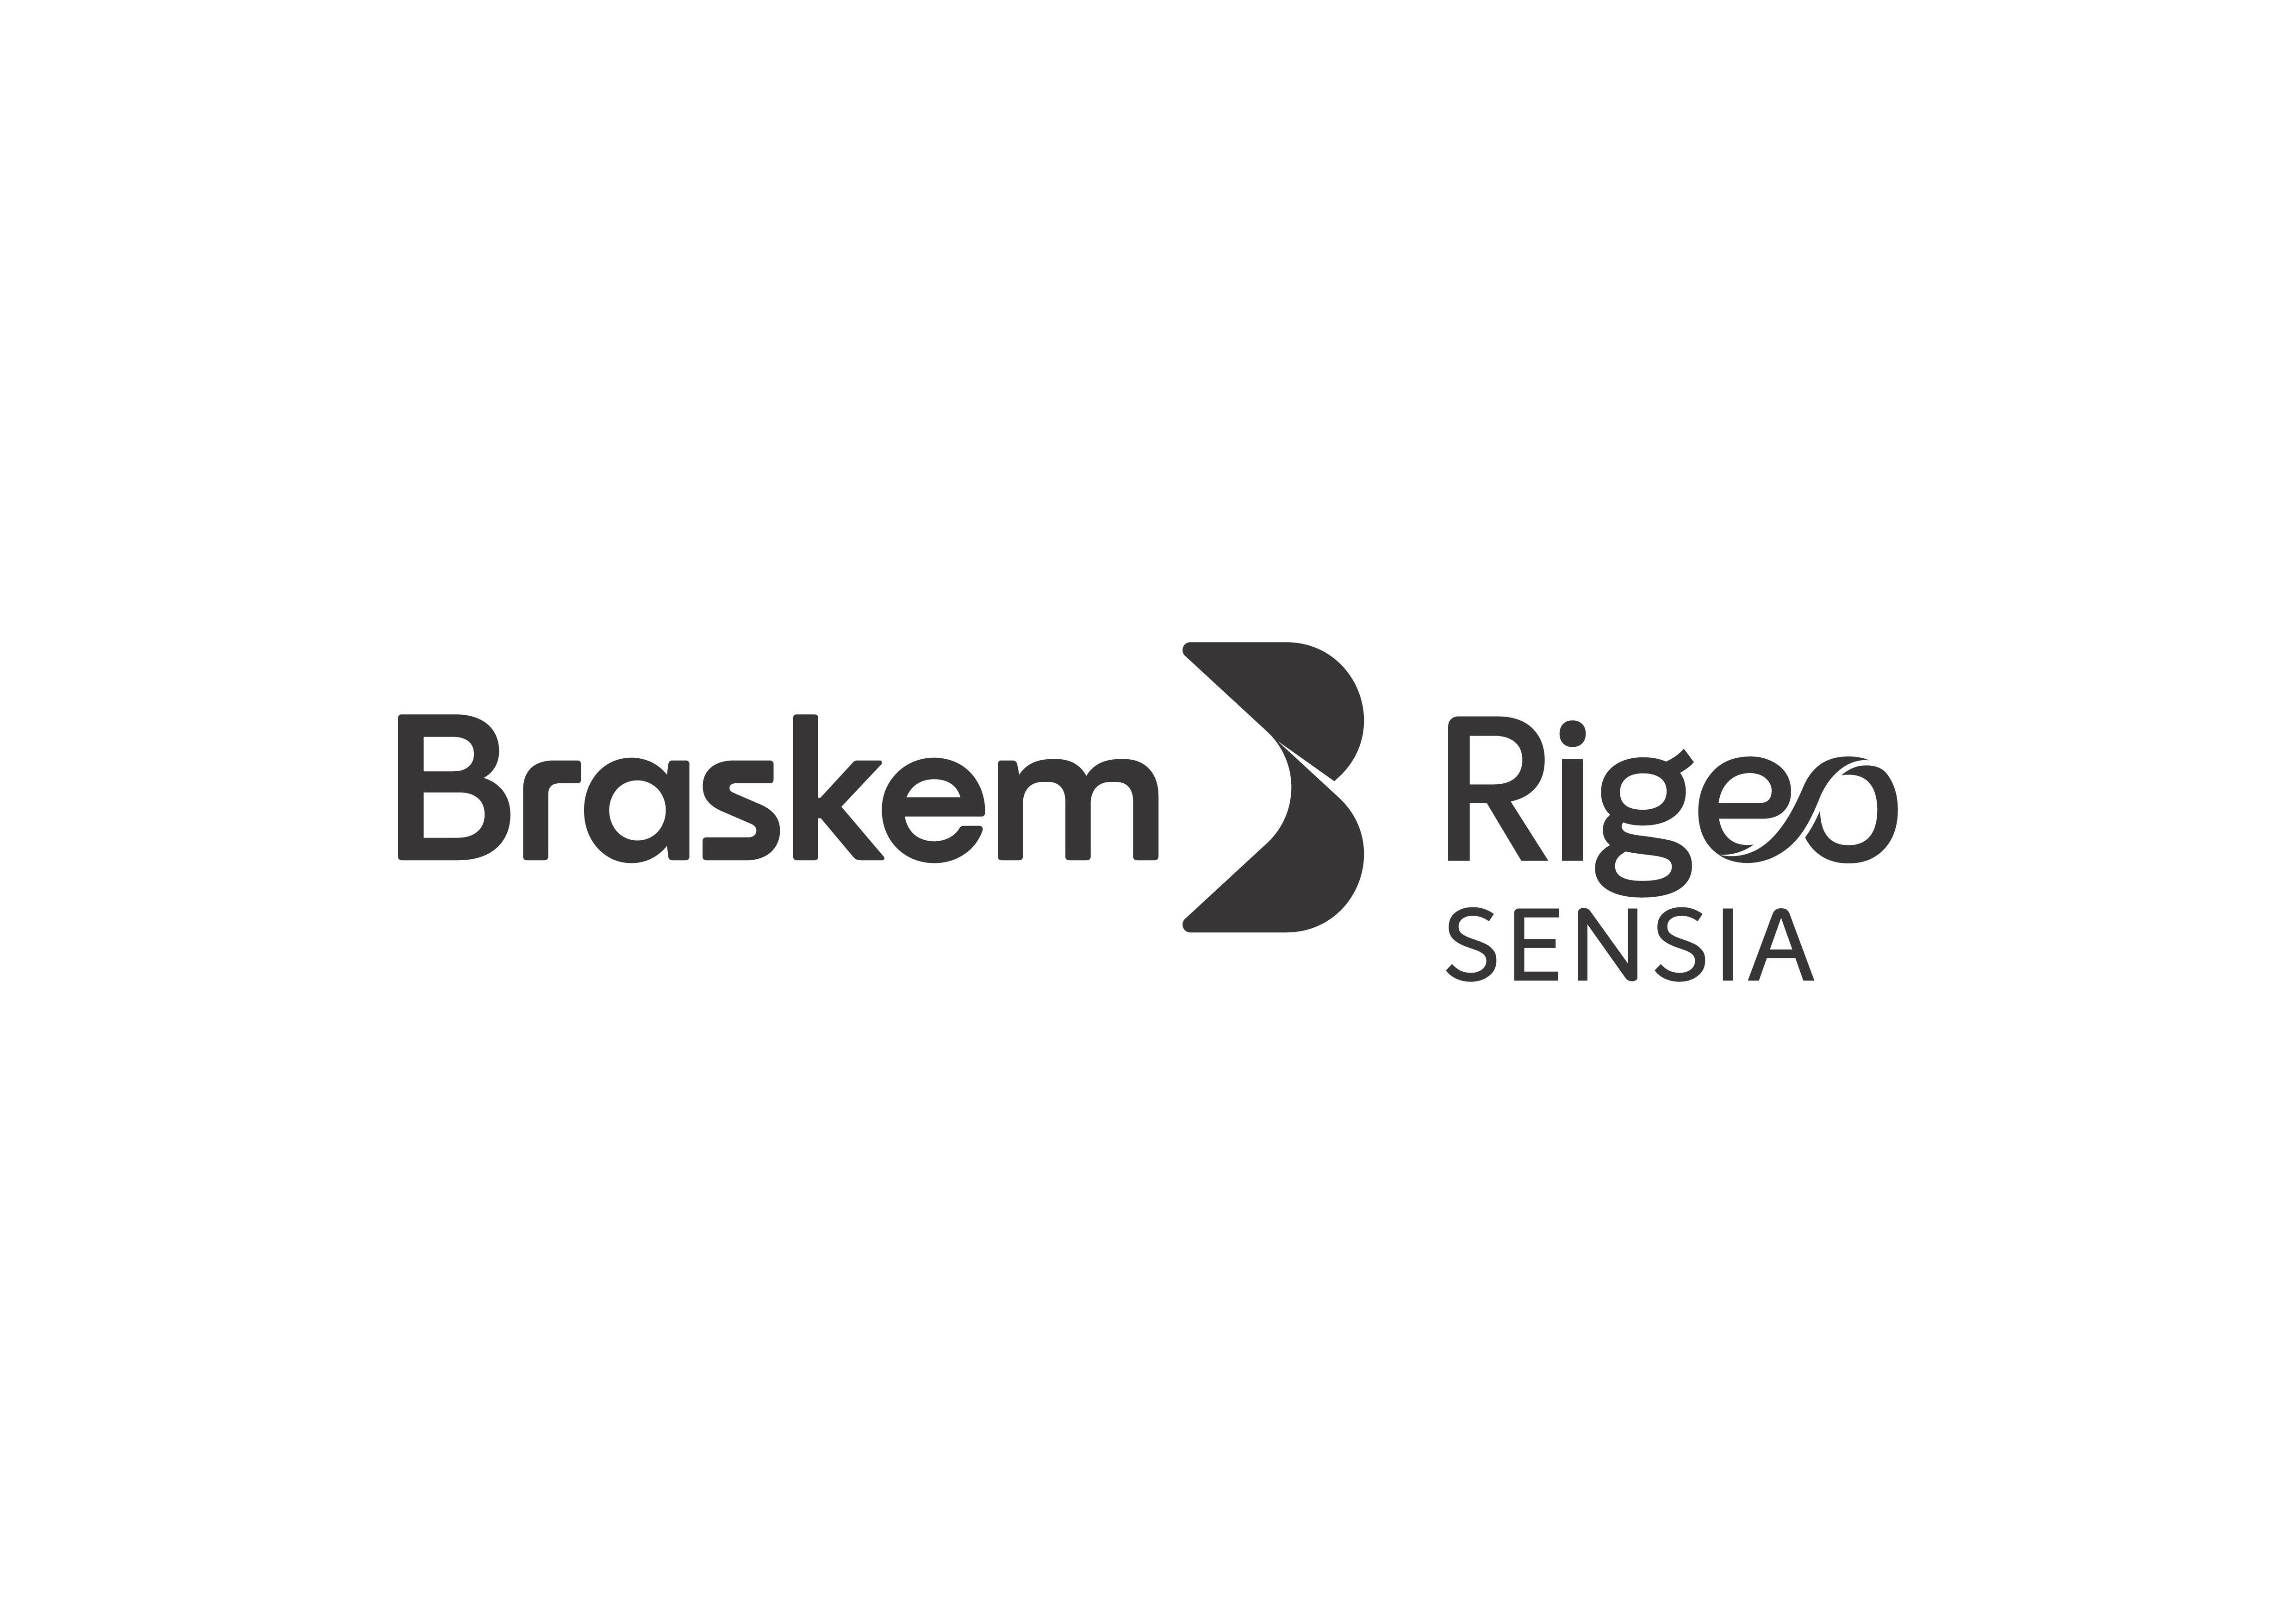  BRASKEM RIGEO SENSIA